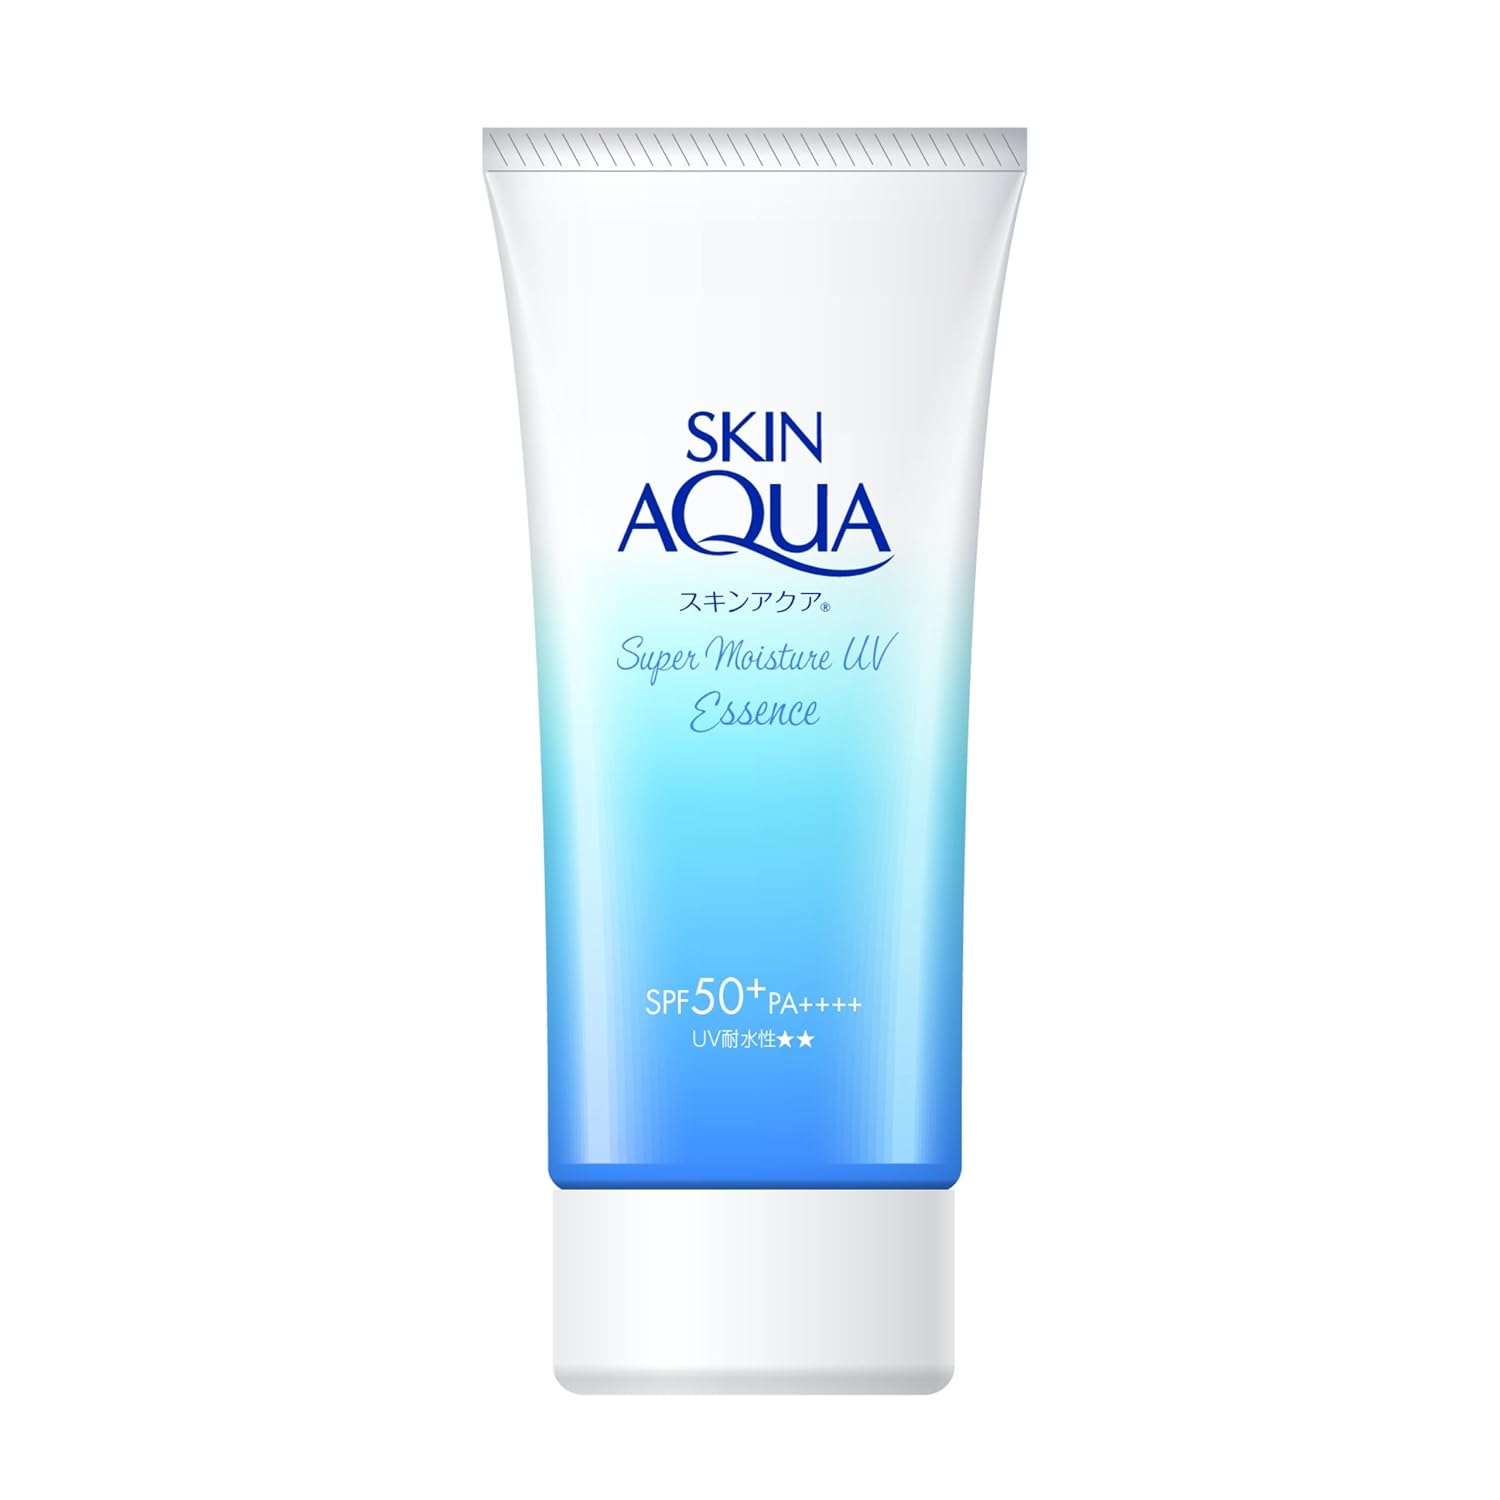 Rohto Skin Aqua UV Super Moisture Essence SPF 50+ PA++++ 80g